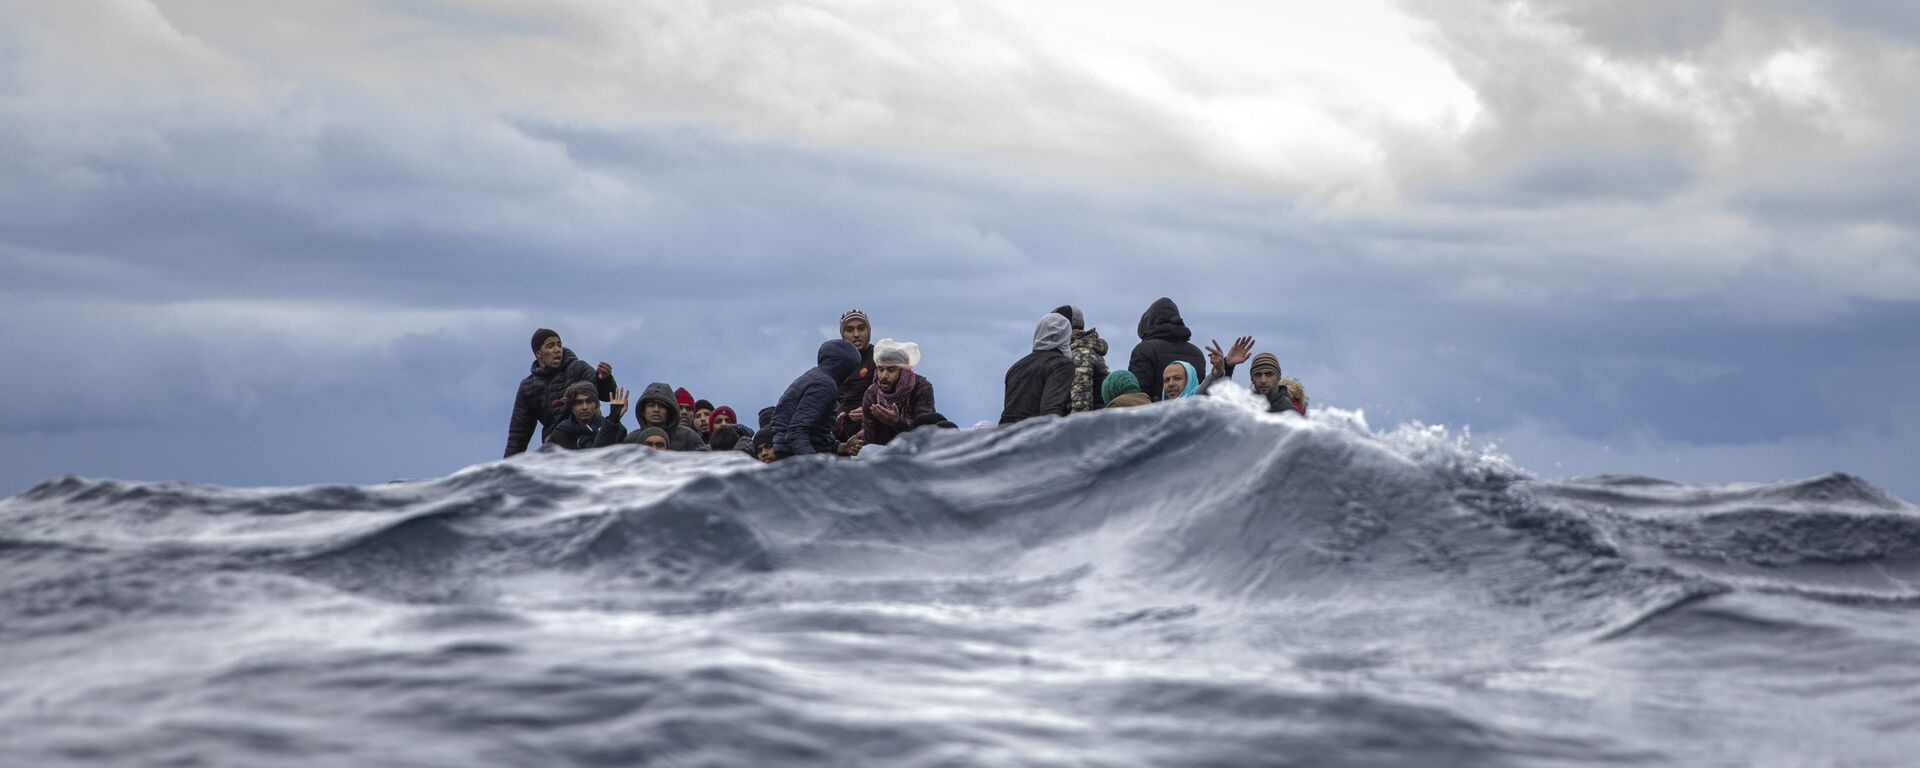 Inmigrantes en medio del mar Mediterráneo a punto de ser rescatados por la ONG española Open Arms. Enero 2020 - Sputnik Mundo, 1920, 20.07.2021